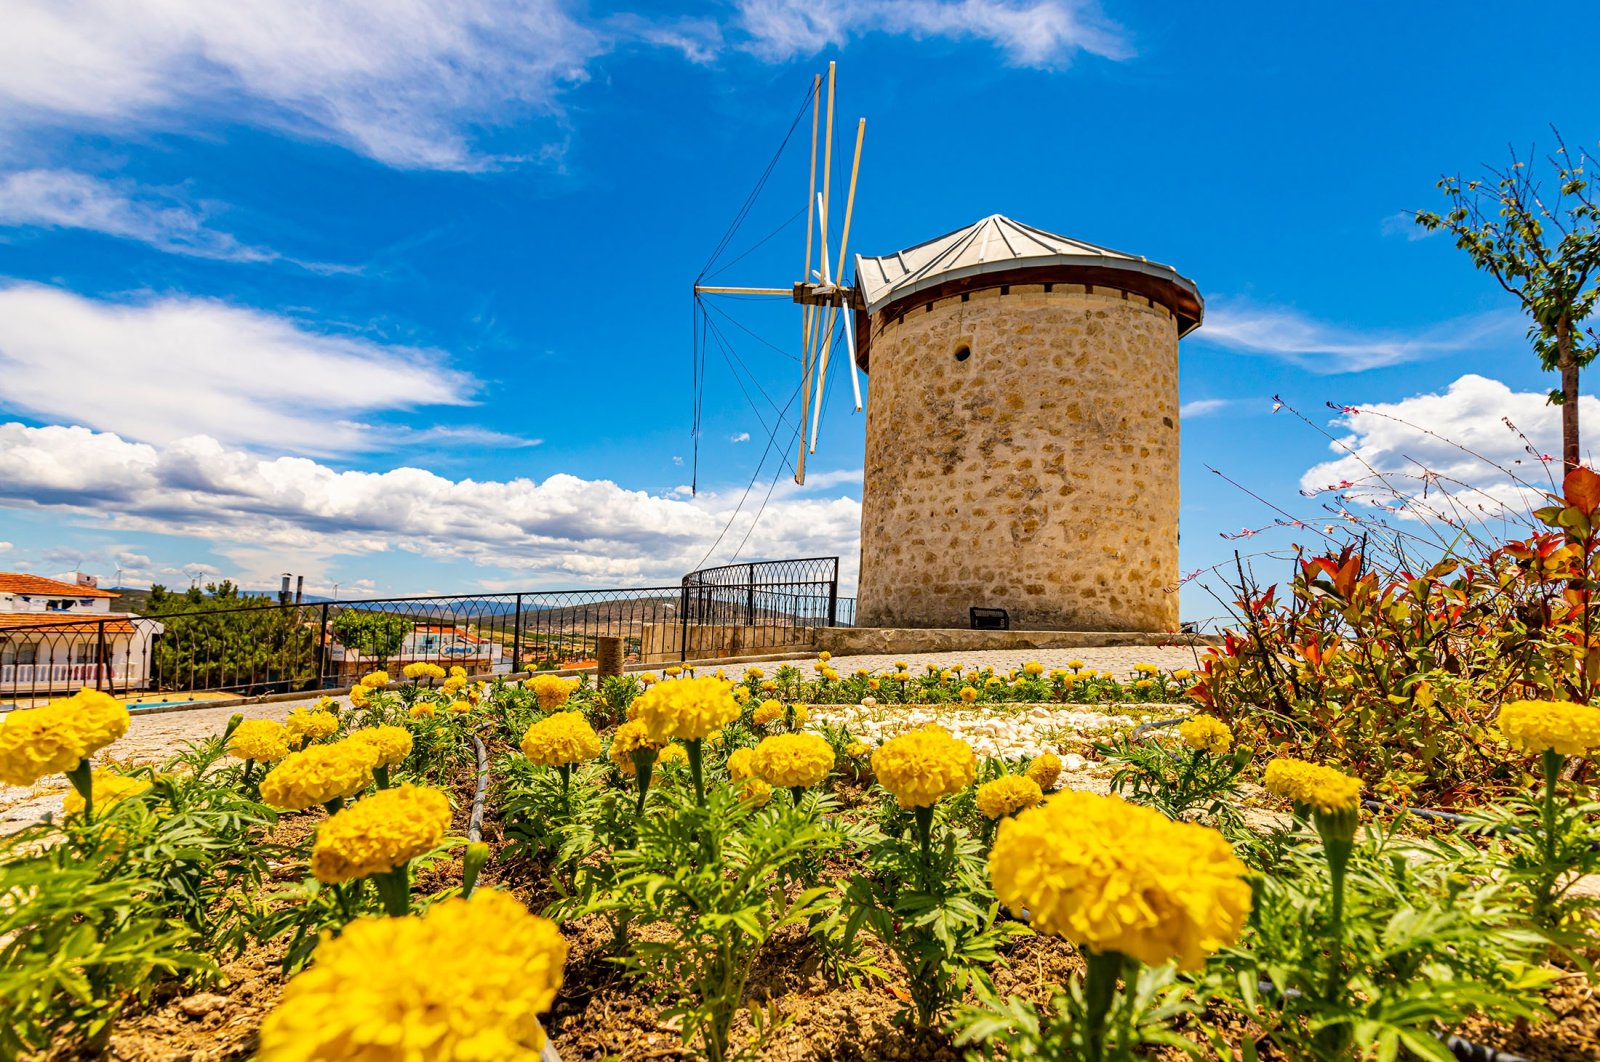 Windmills shine in the sun in Alaçatı town of Çeşme, in Izmir, western Turkey, June 2, 2021. (Shutterstock Photo)